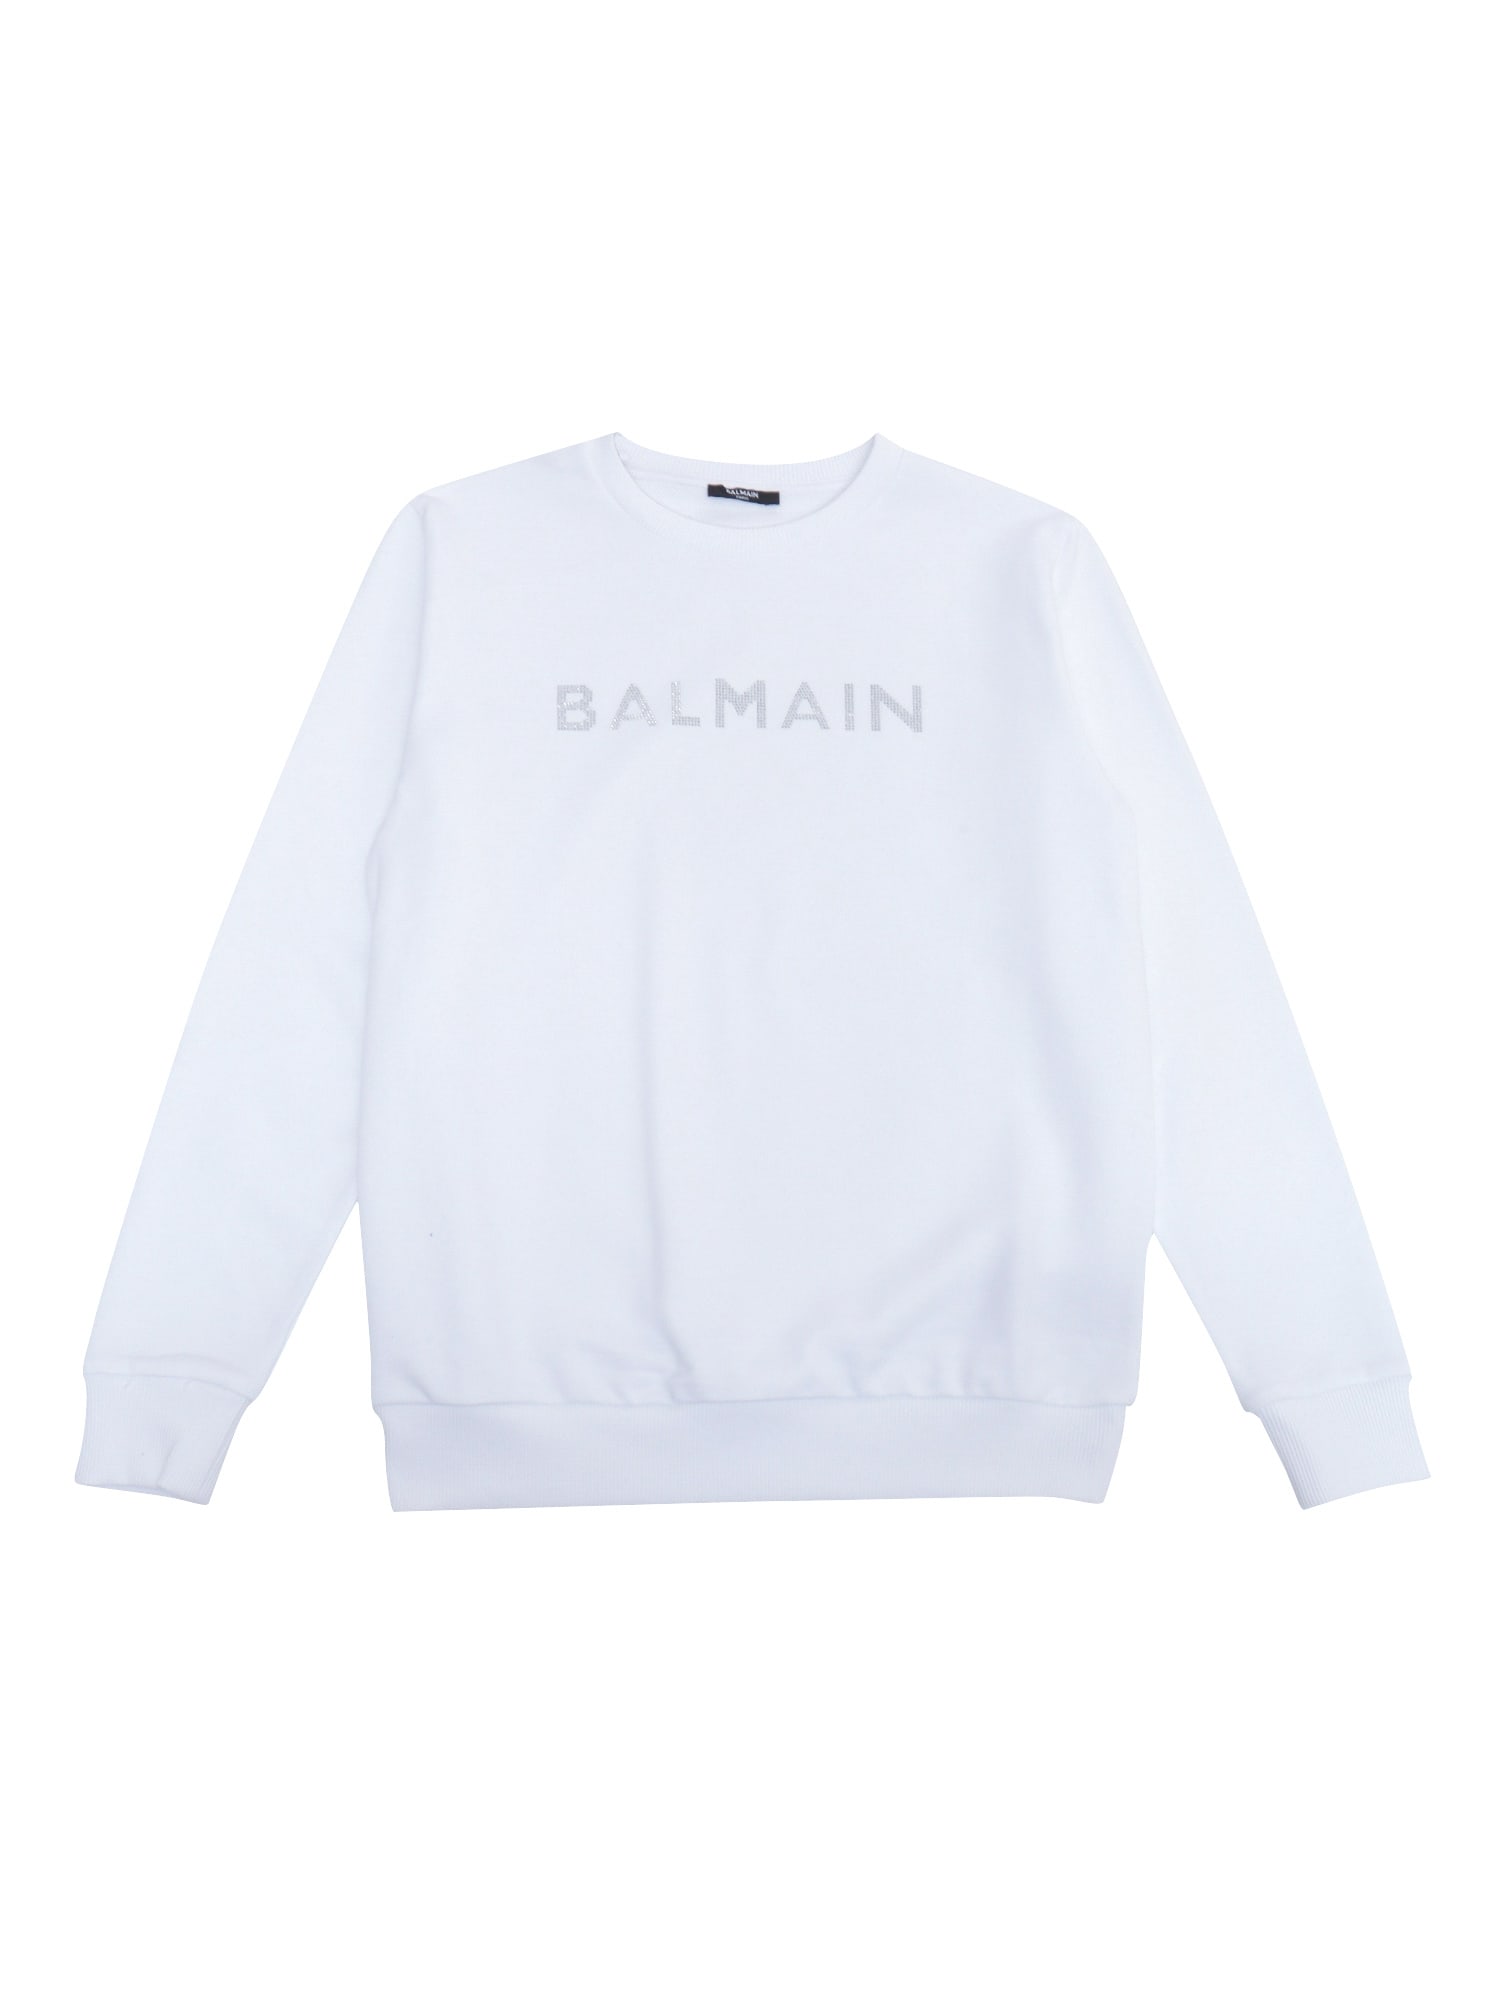 Balmain White Sweatshirt